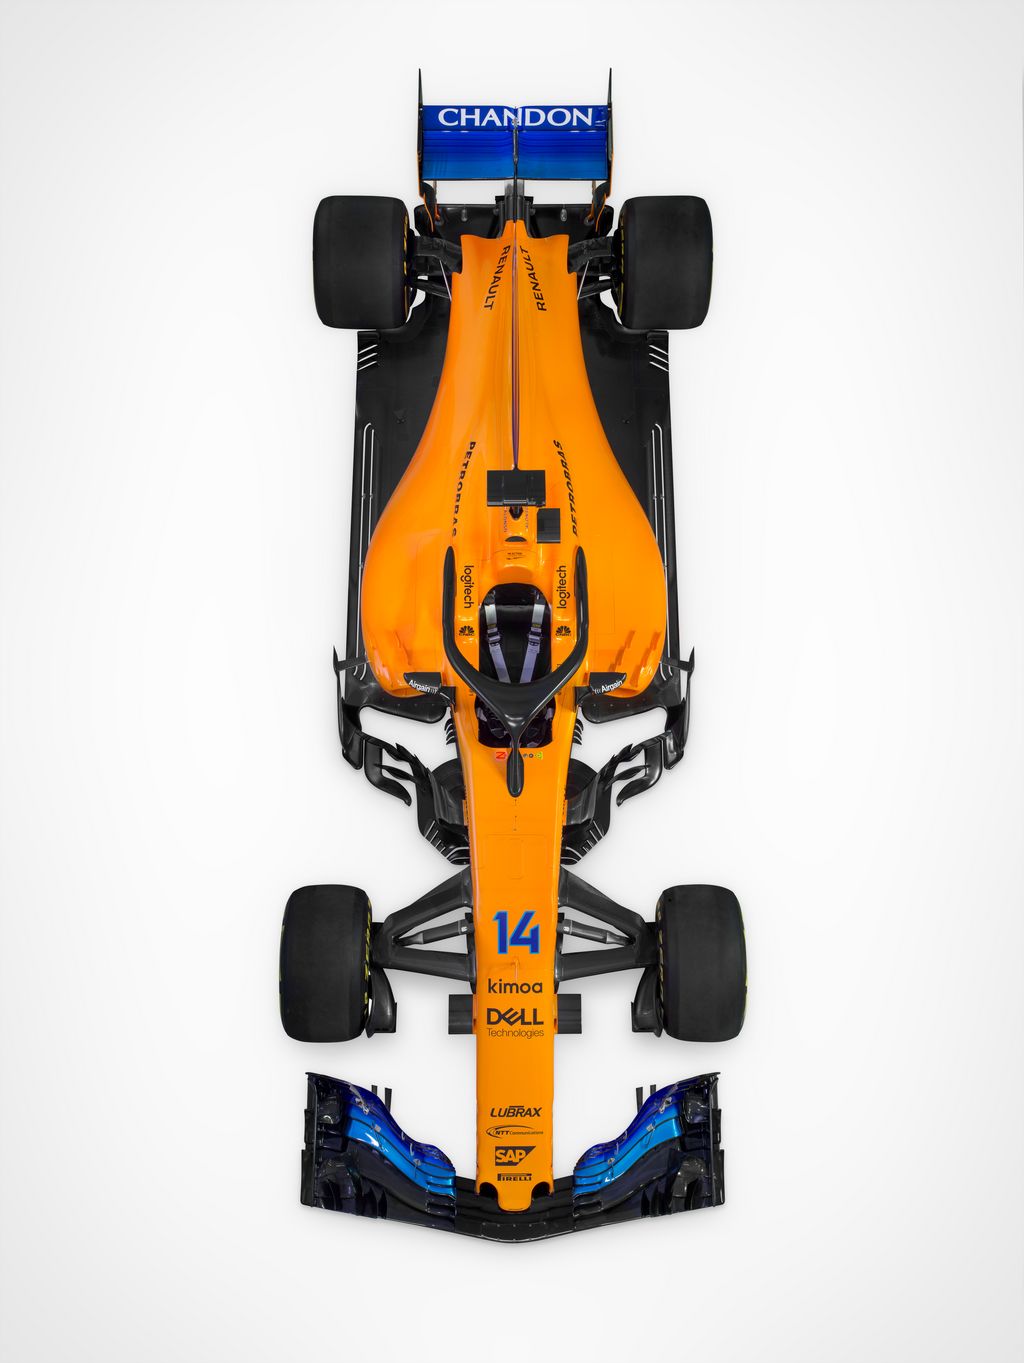 Forma-1, Mclaren Renault, McLaren MCL33 bemutató 